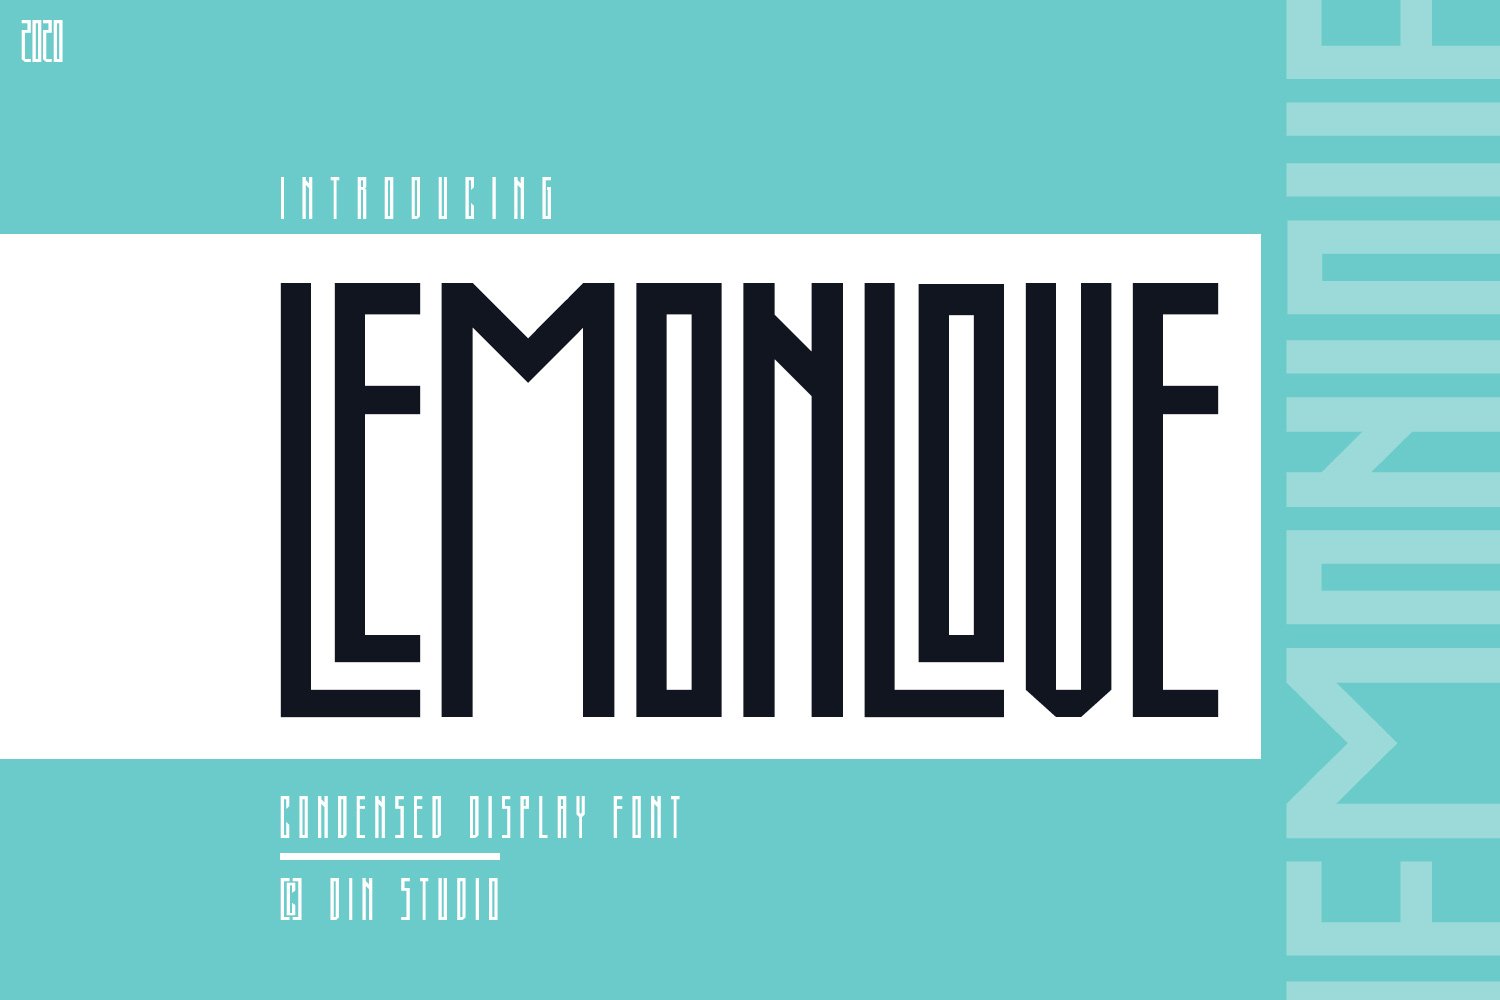 Lemonlove cover image.